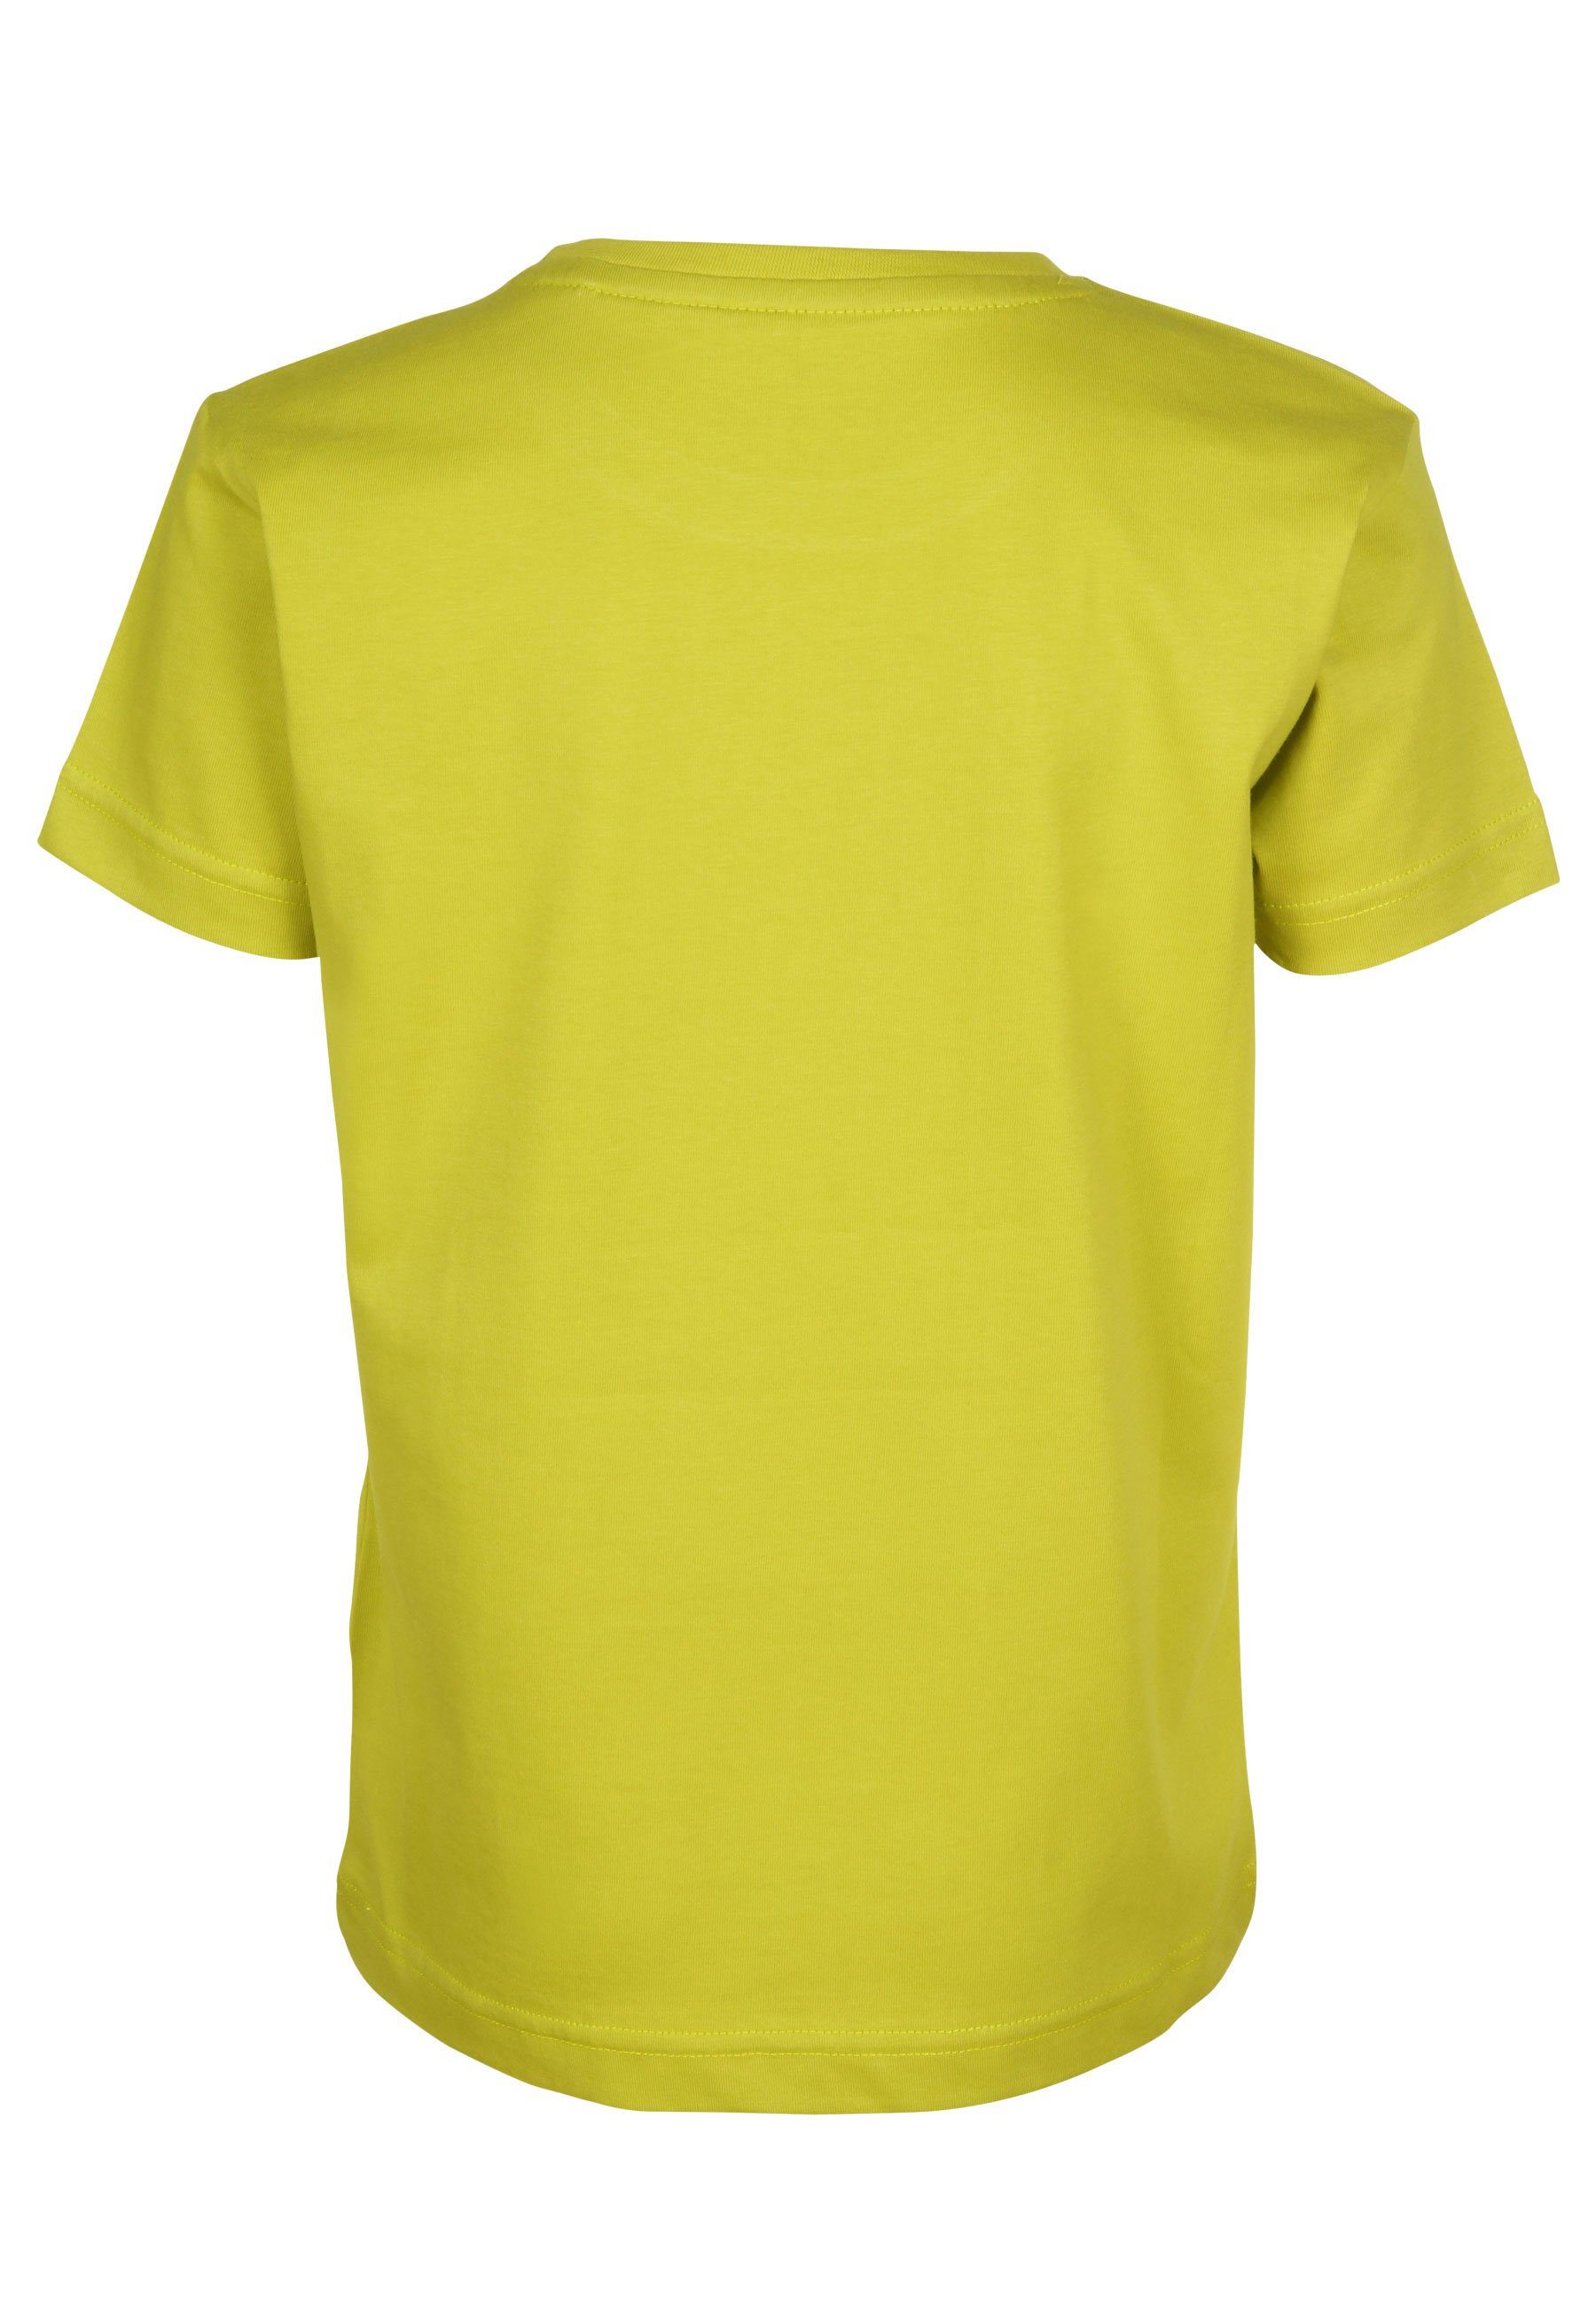 Kunterbunter Elkline Kurze citronelle T-Shirt Socke Print Elch